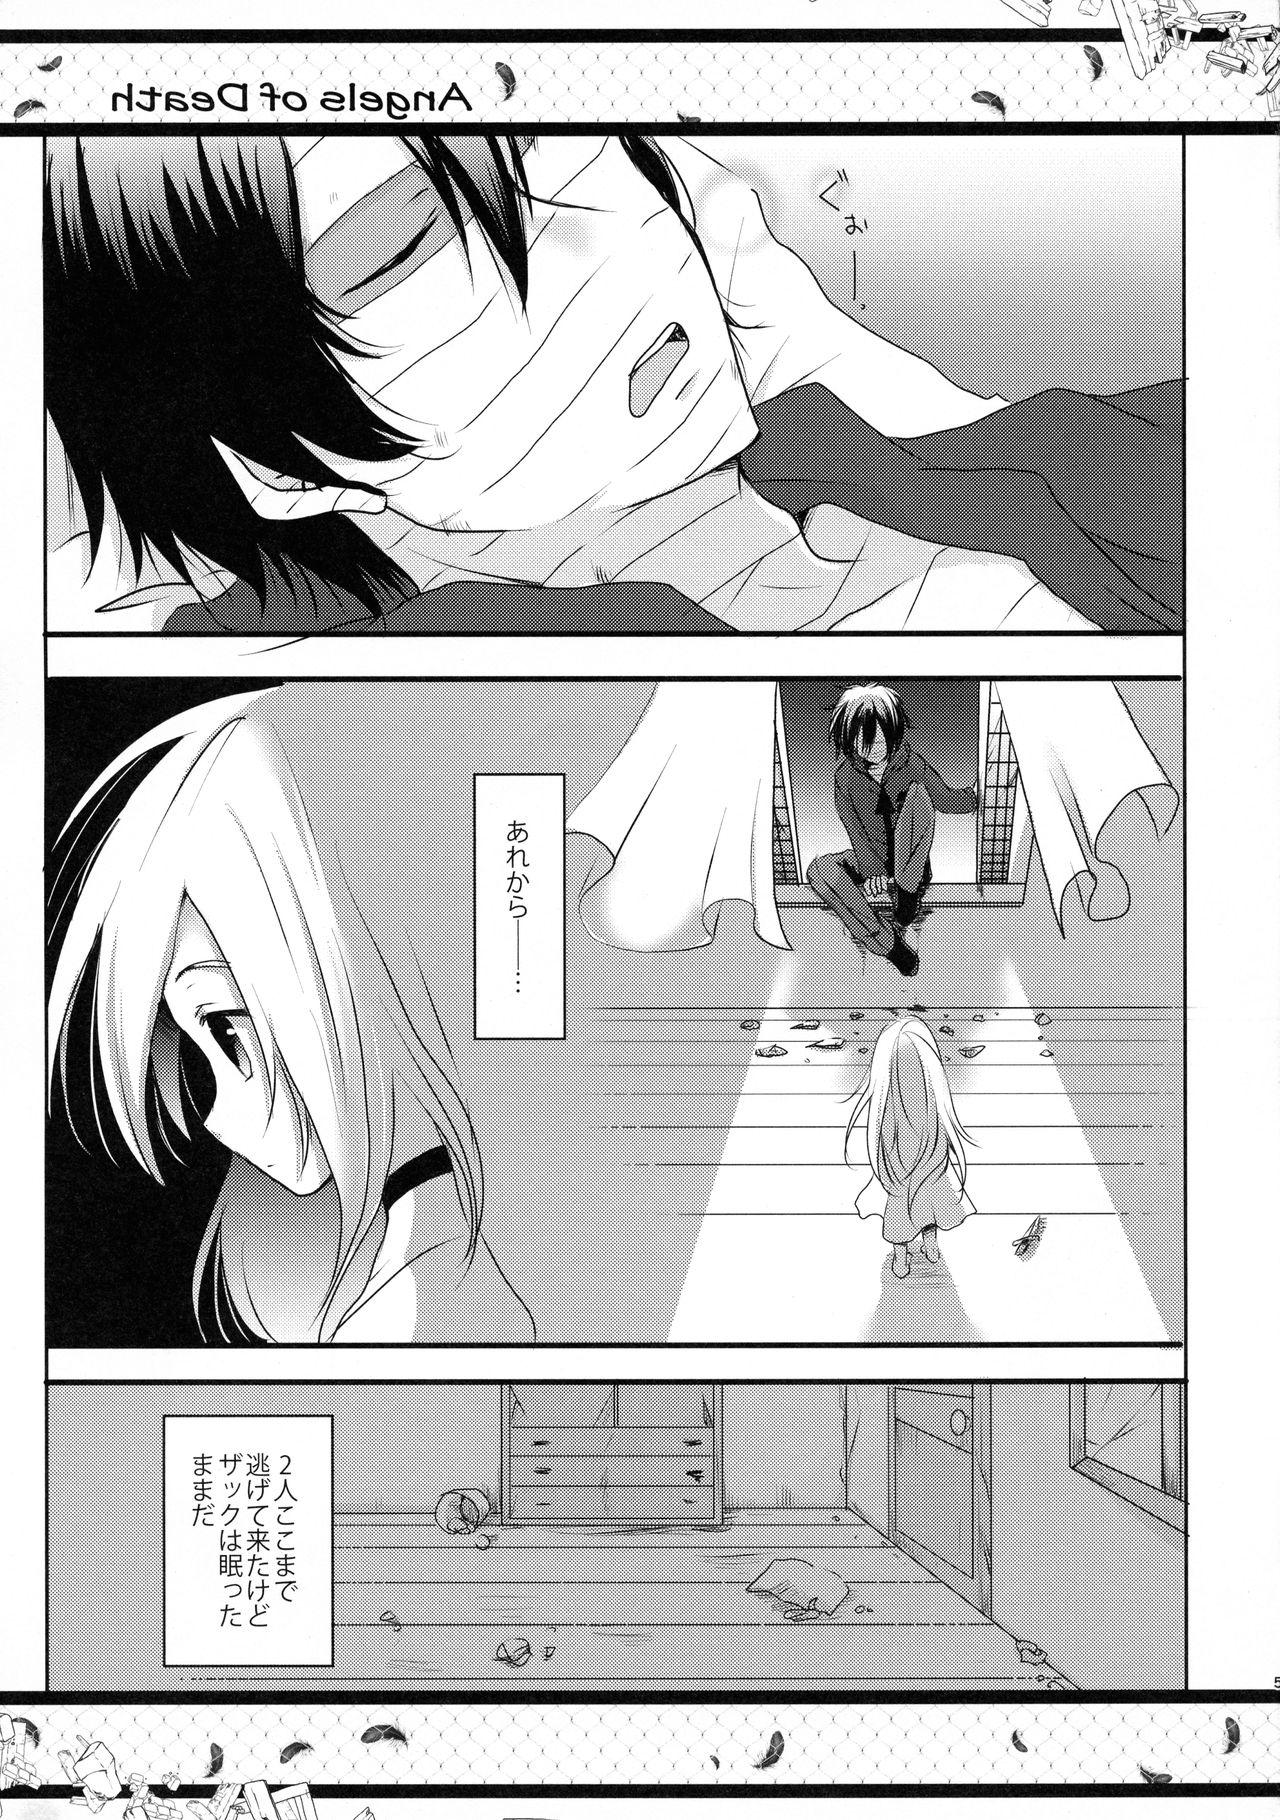 Cheating Wife HAPPY END - Satsuriku no tenshi Village - Page 5